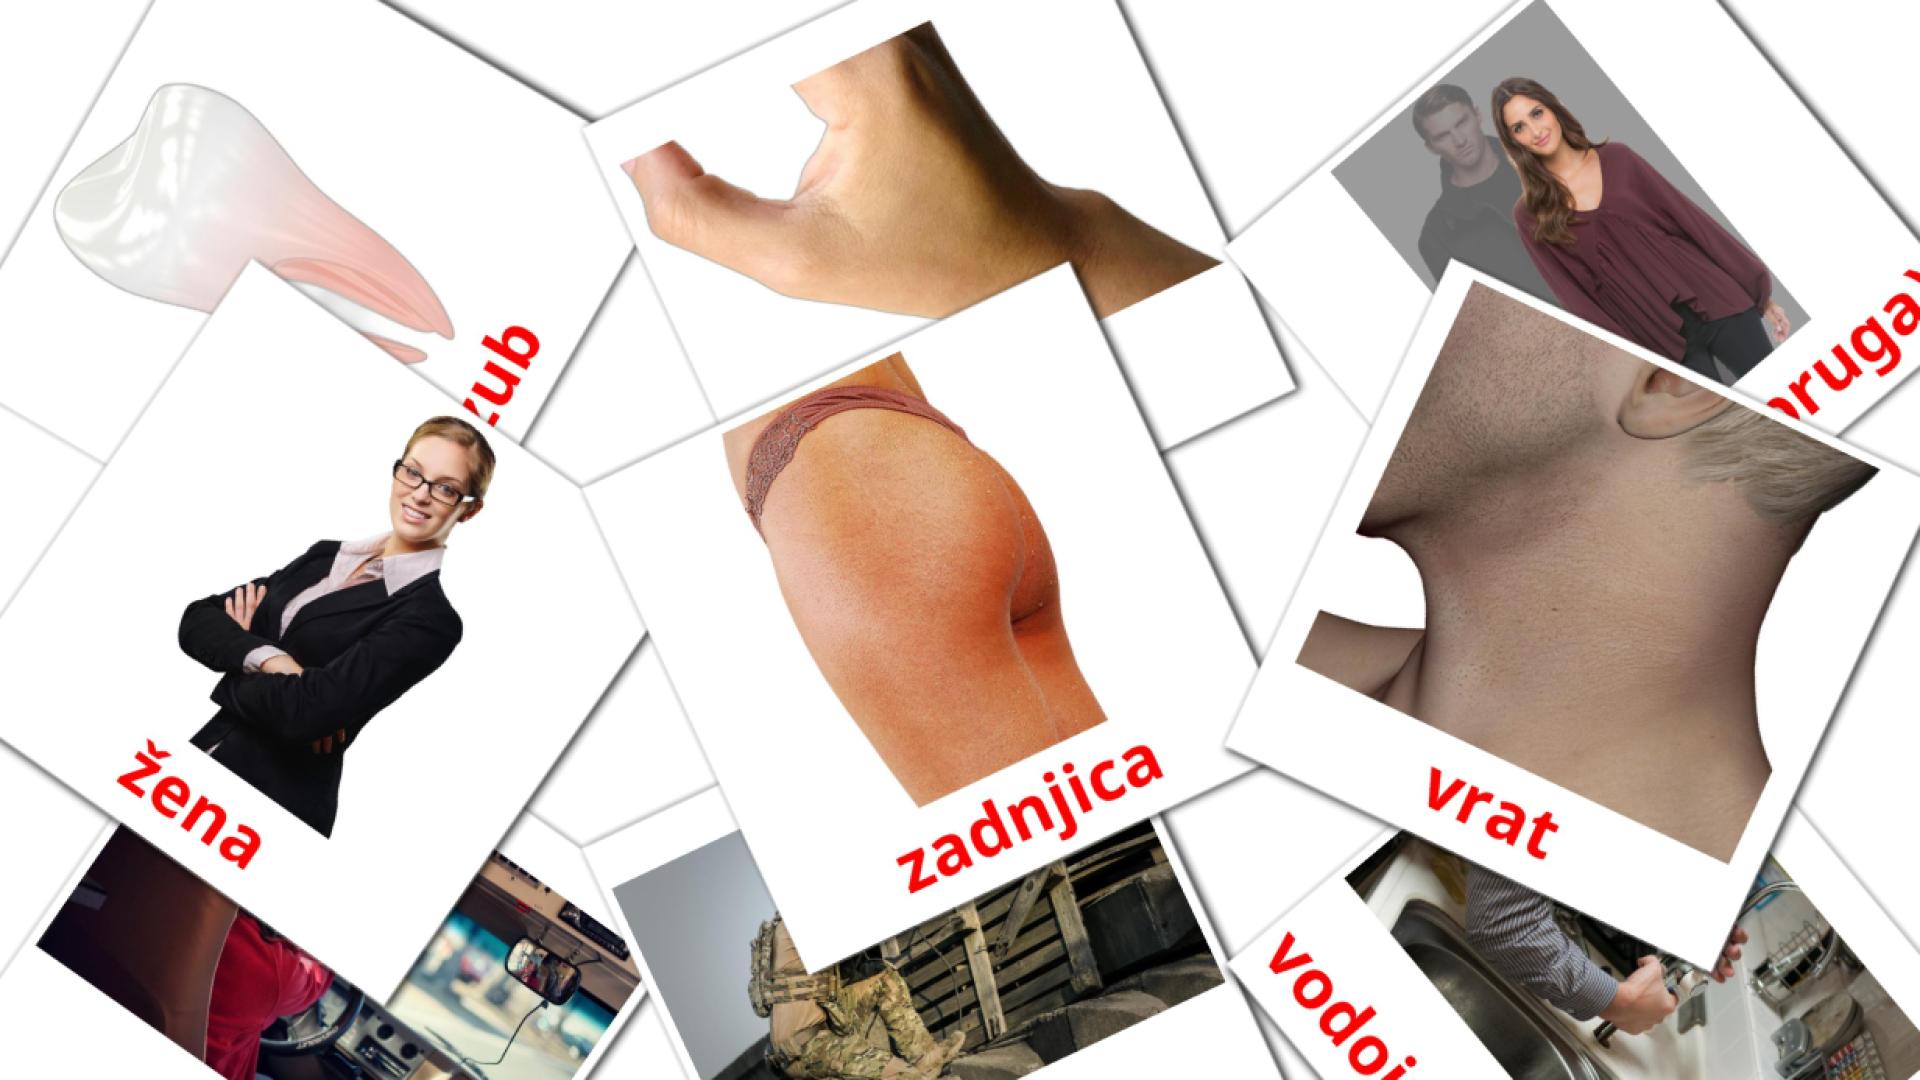 ljudi serbian vocabulary flashcards